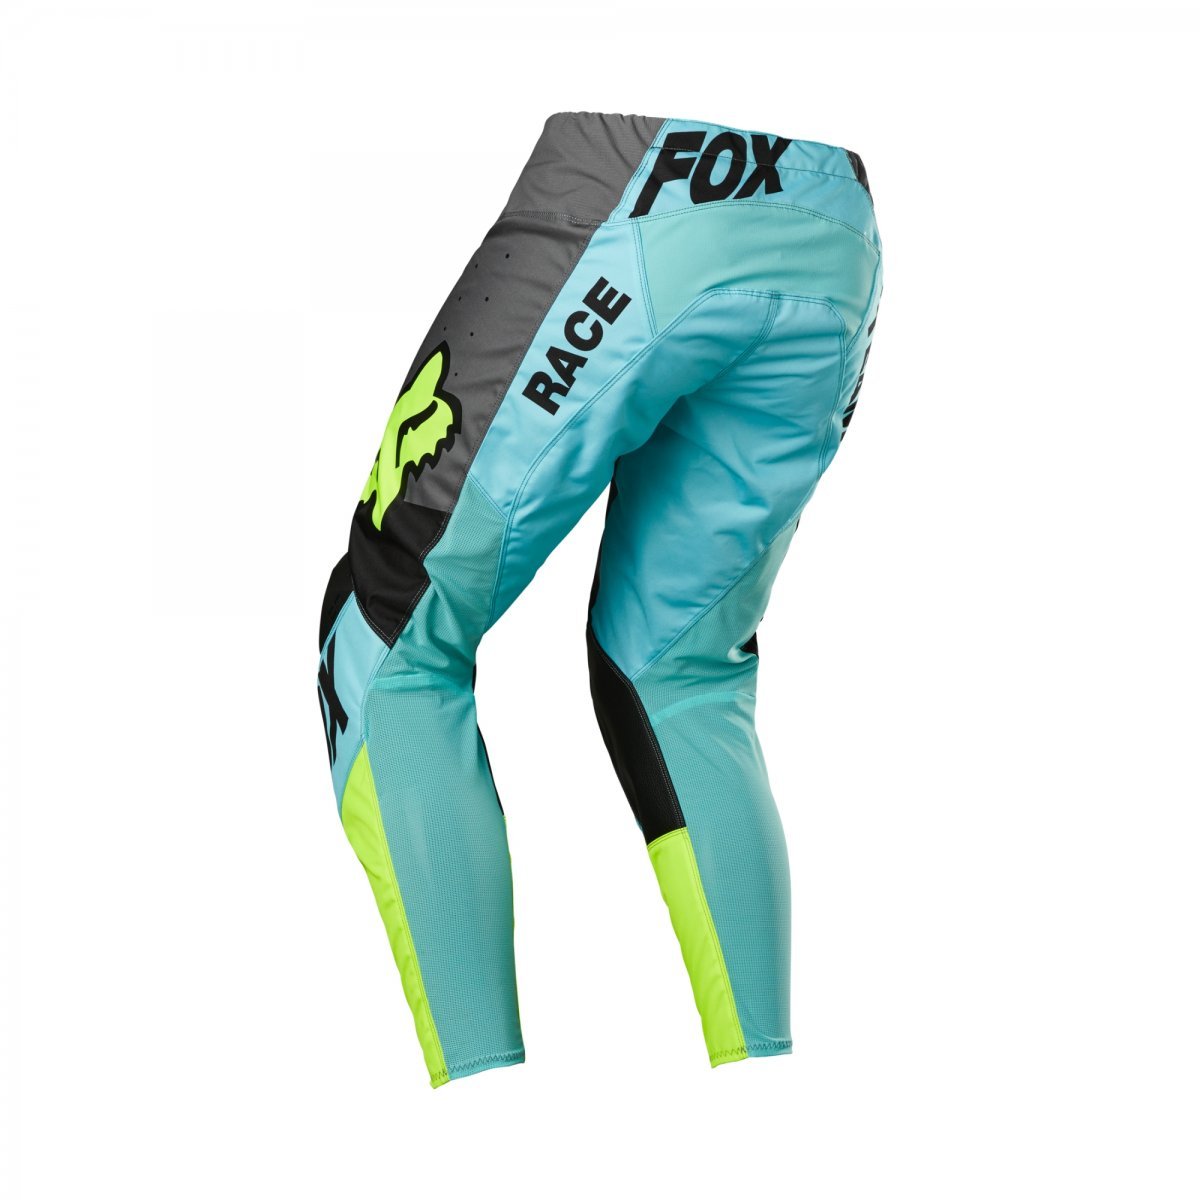 Kalhoty FOX 180 FUX modrozelené 2022 32